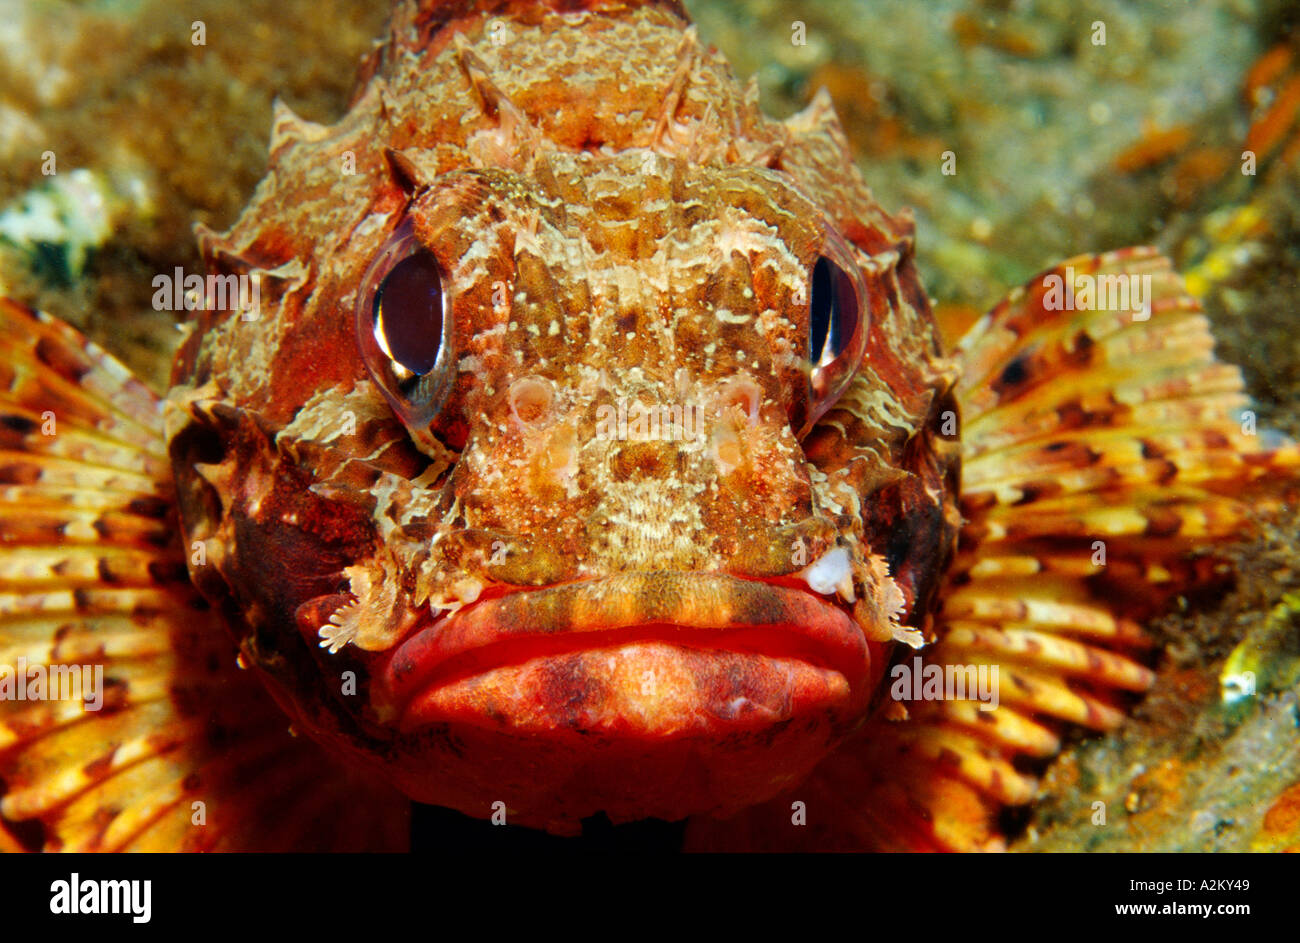 Small rockfish, Scorpaena notata Stock Photo